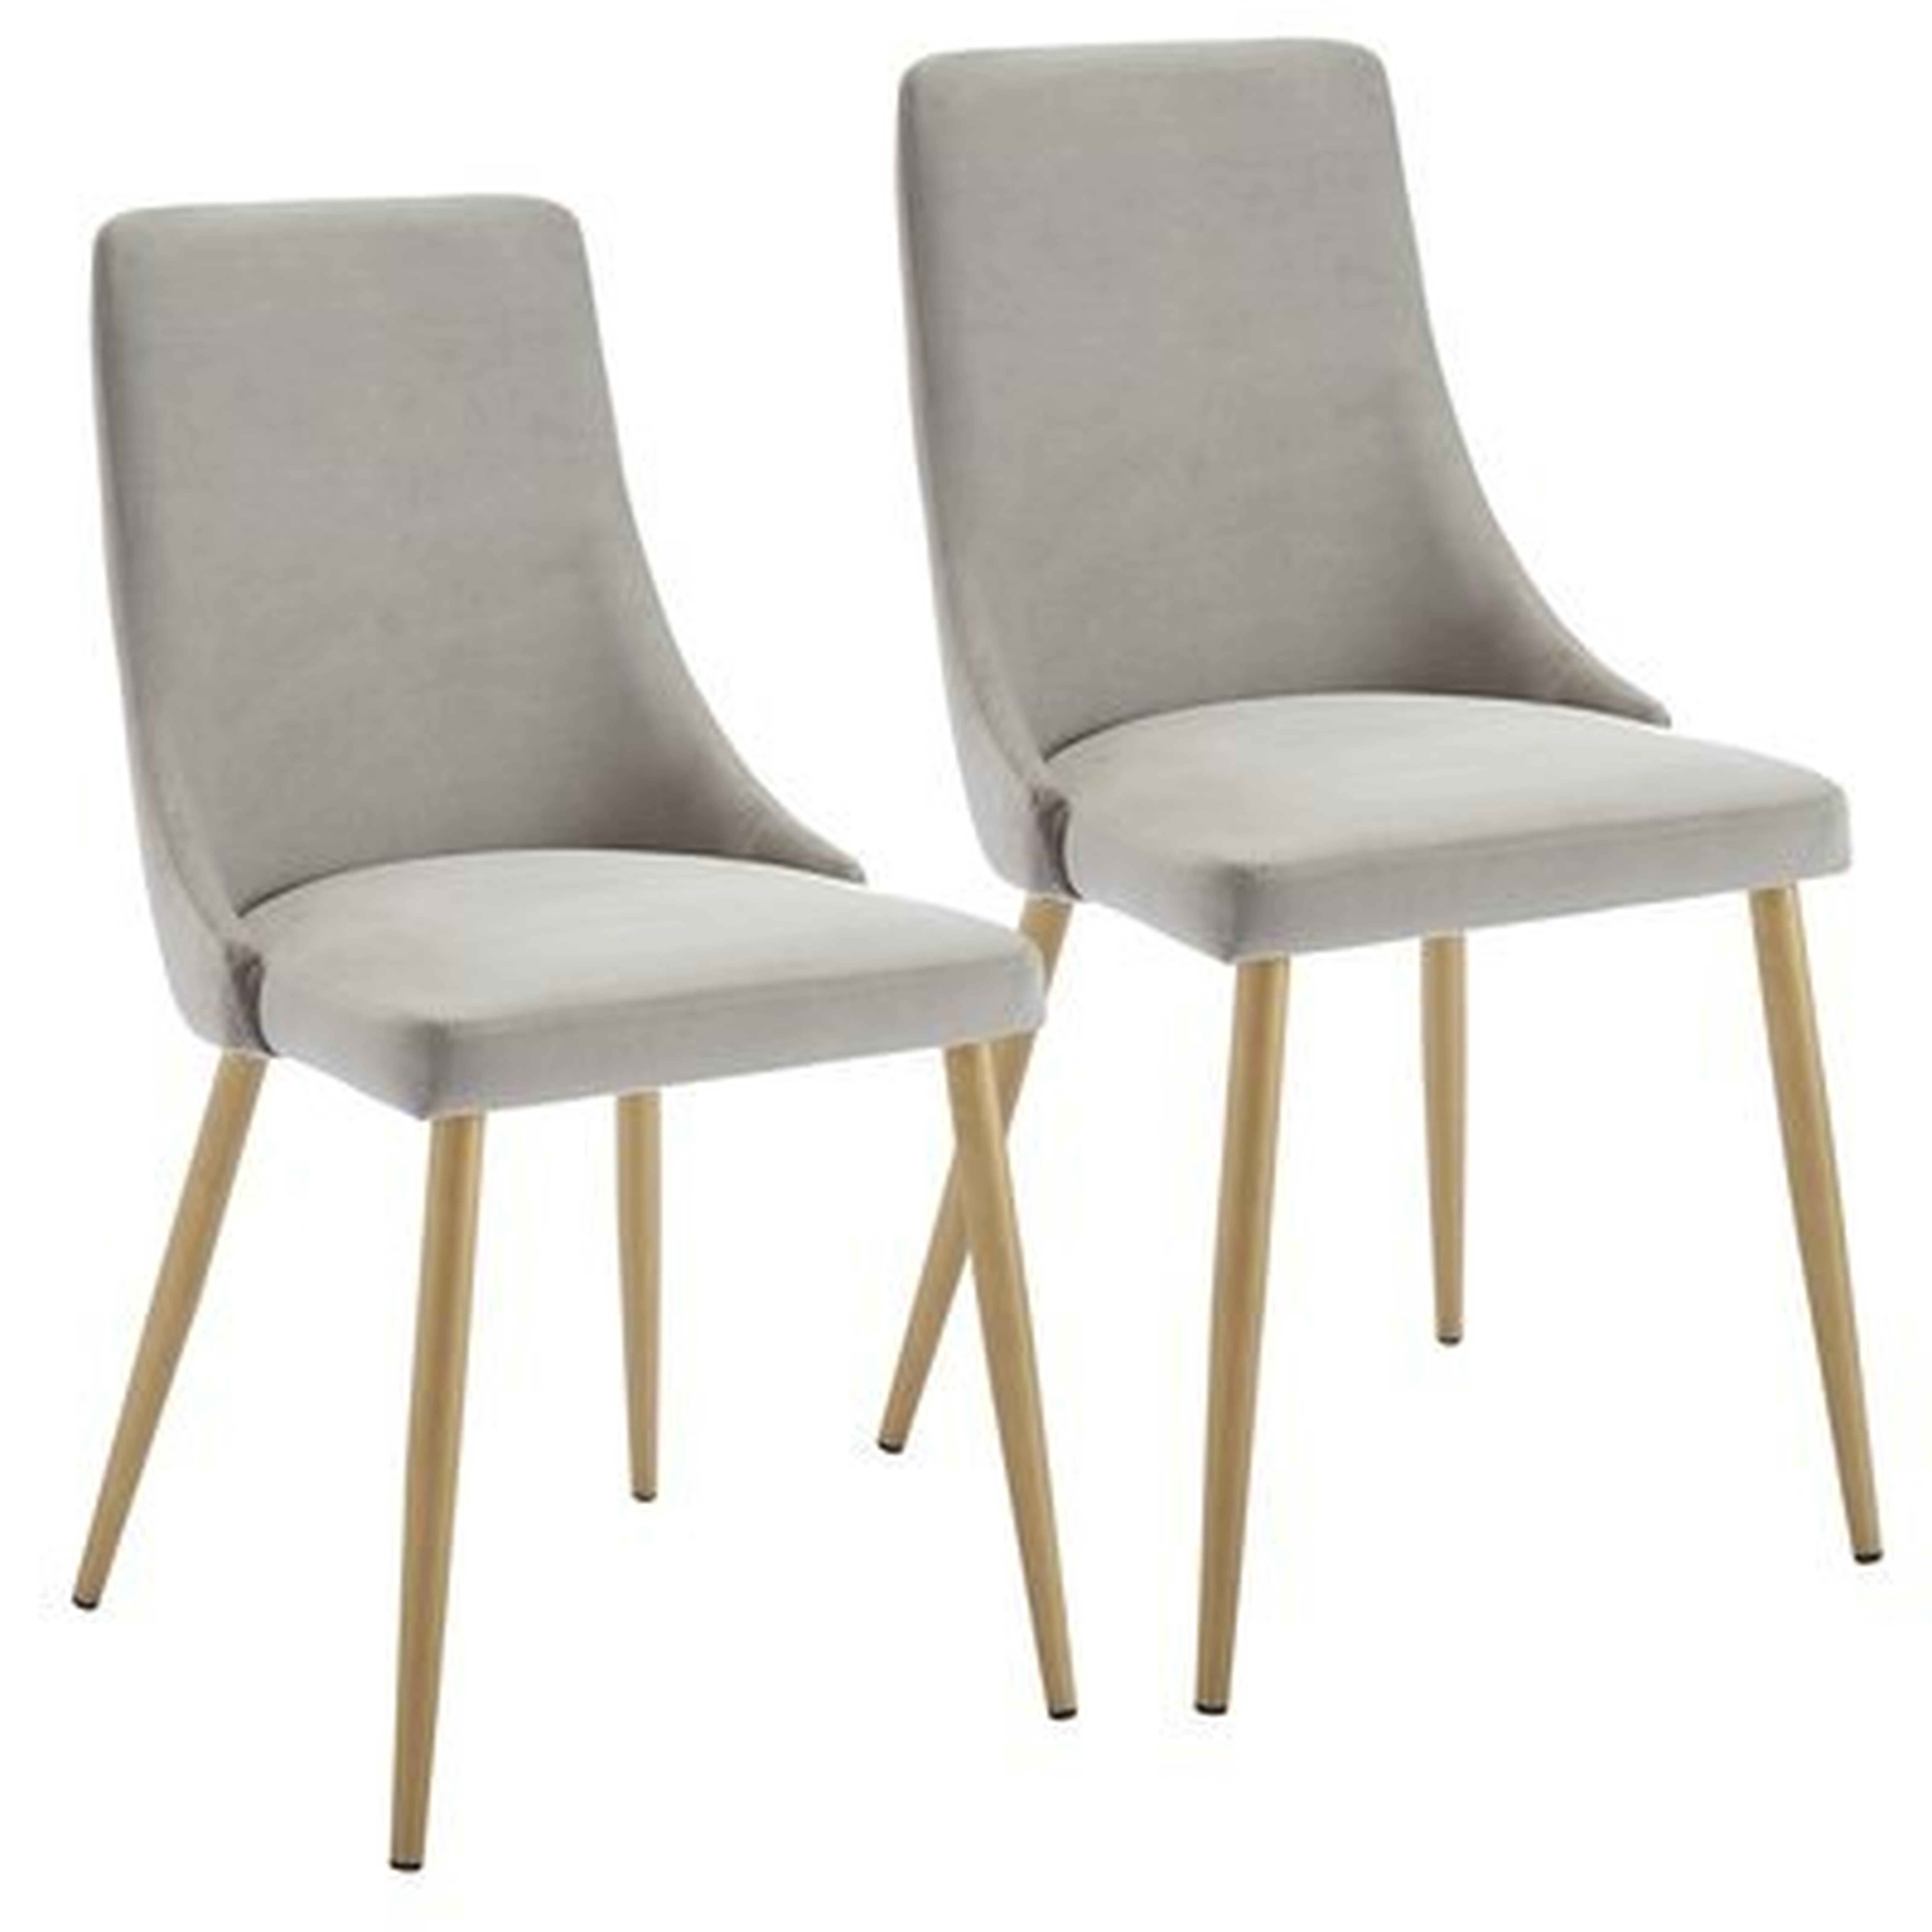 Heffernan Upholstered Dining Chair - Gray (Set of 2) - Wayfair